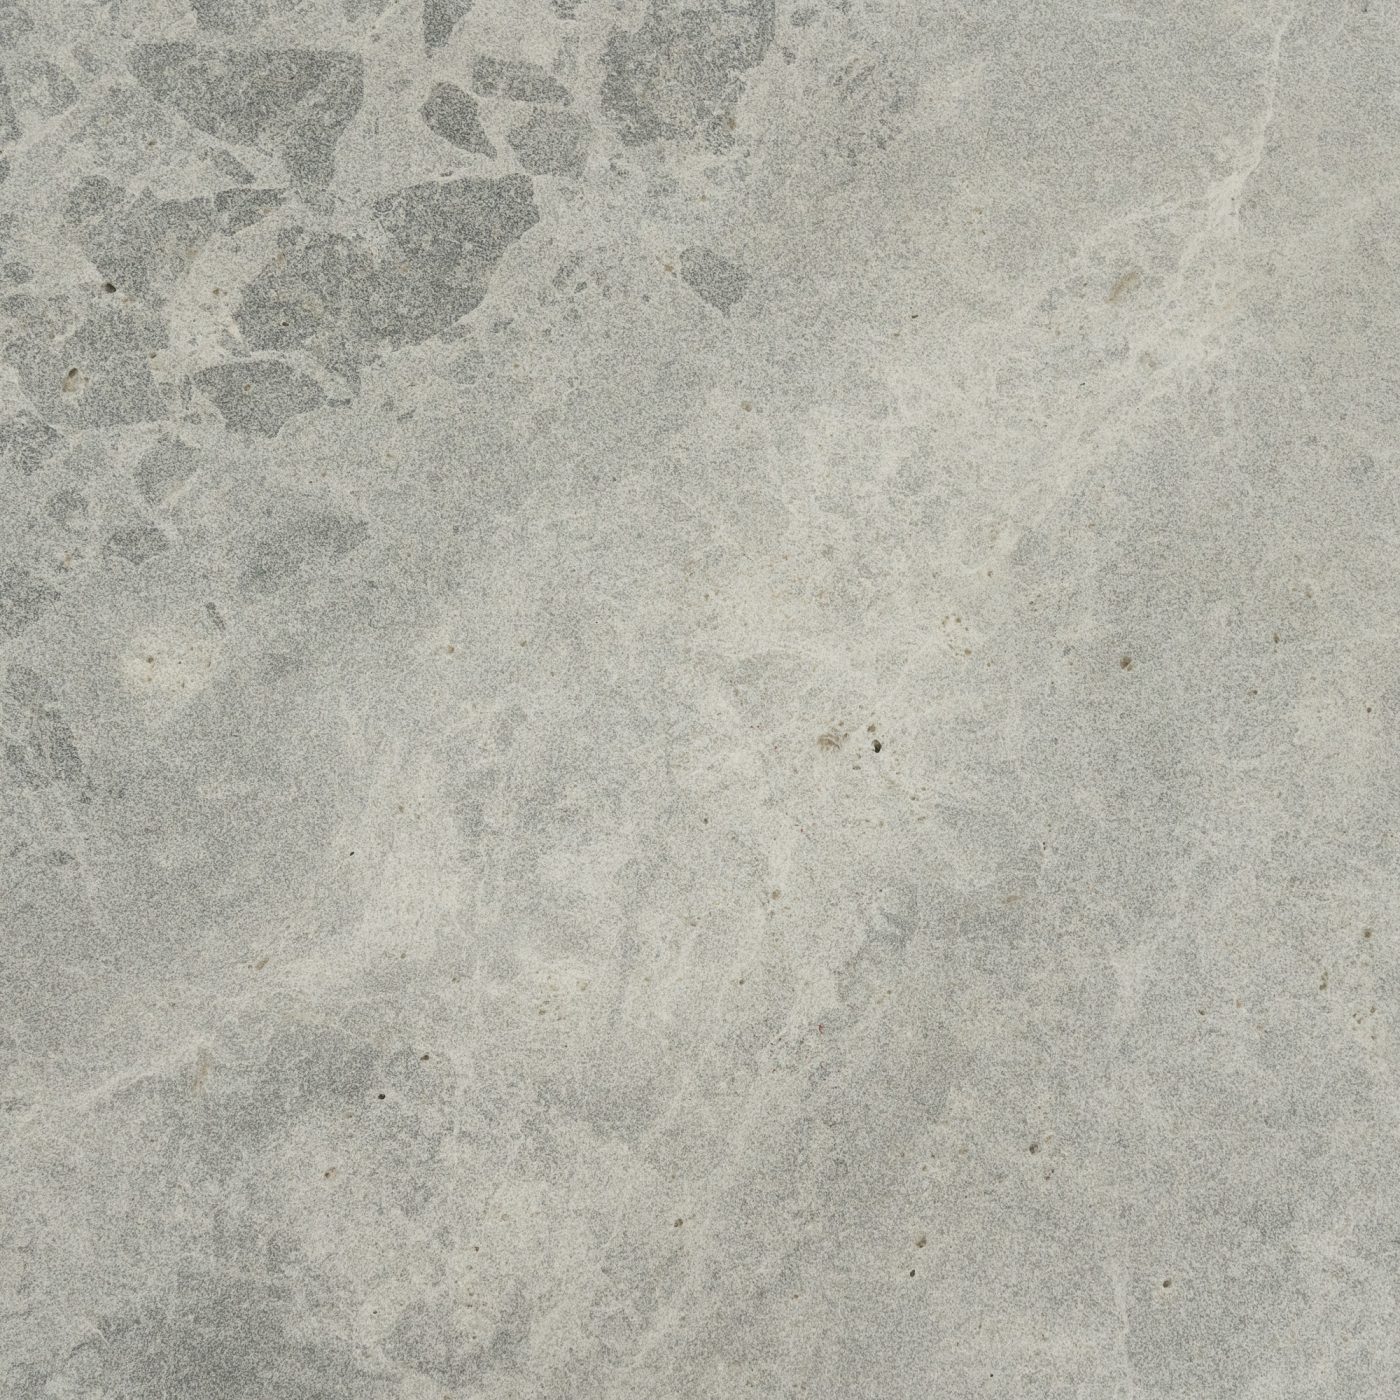 Tundra Ocean Sandblasted Limestone